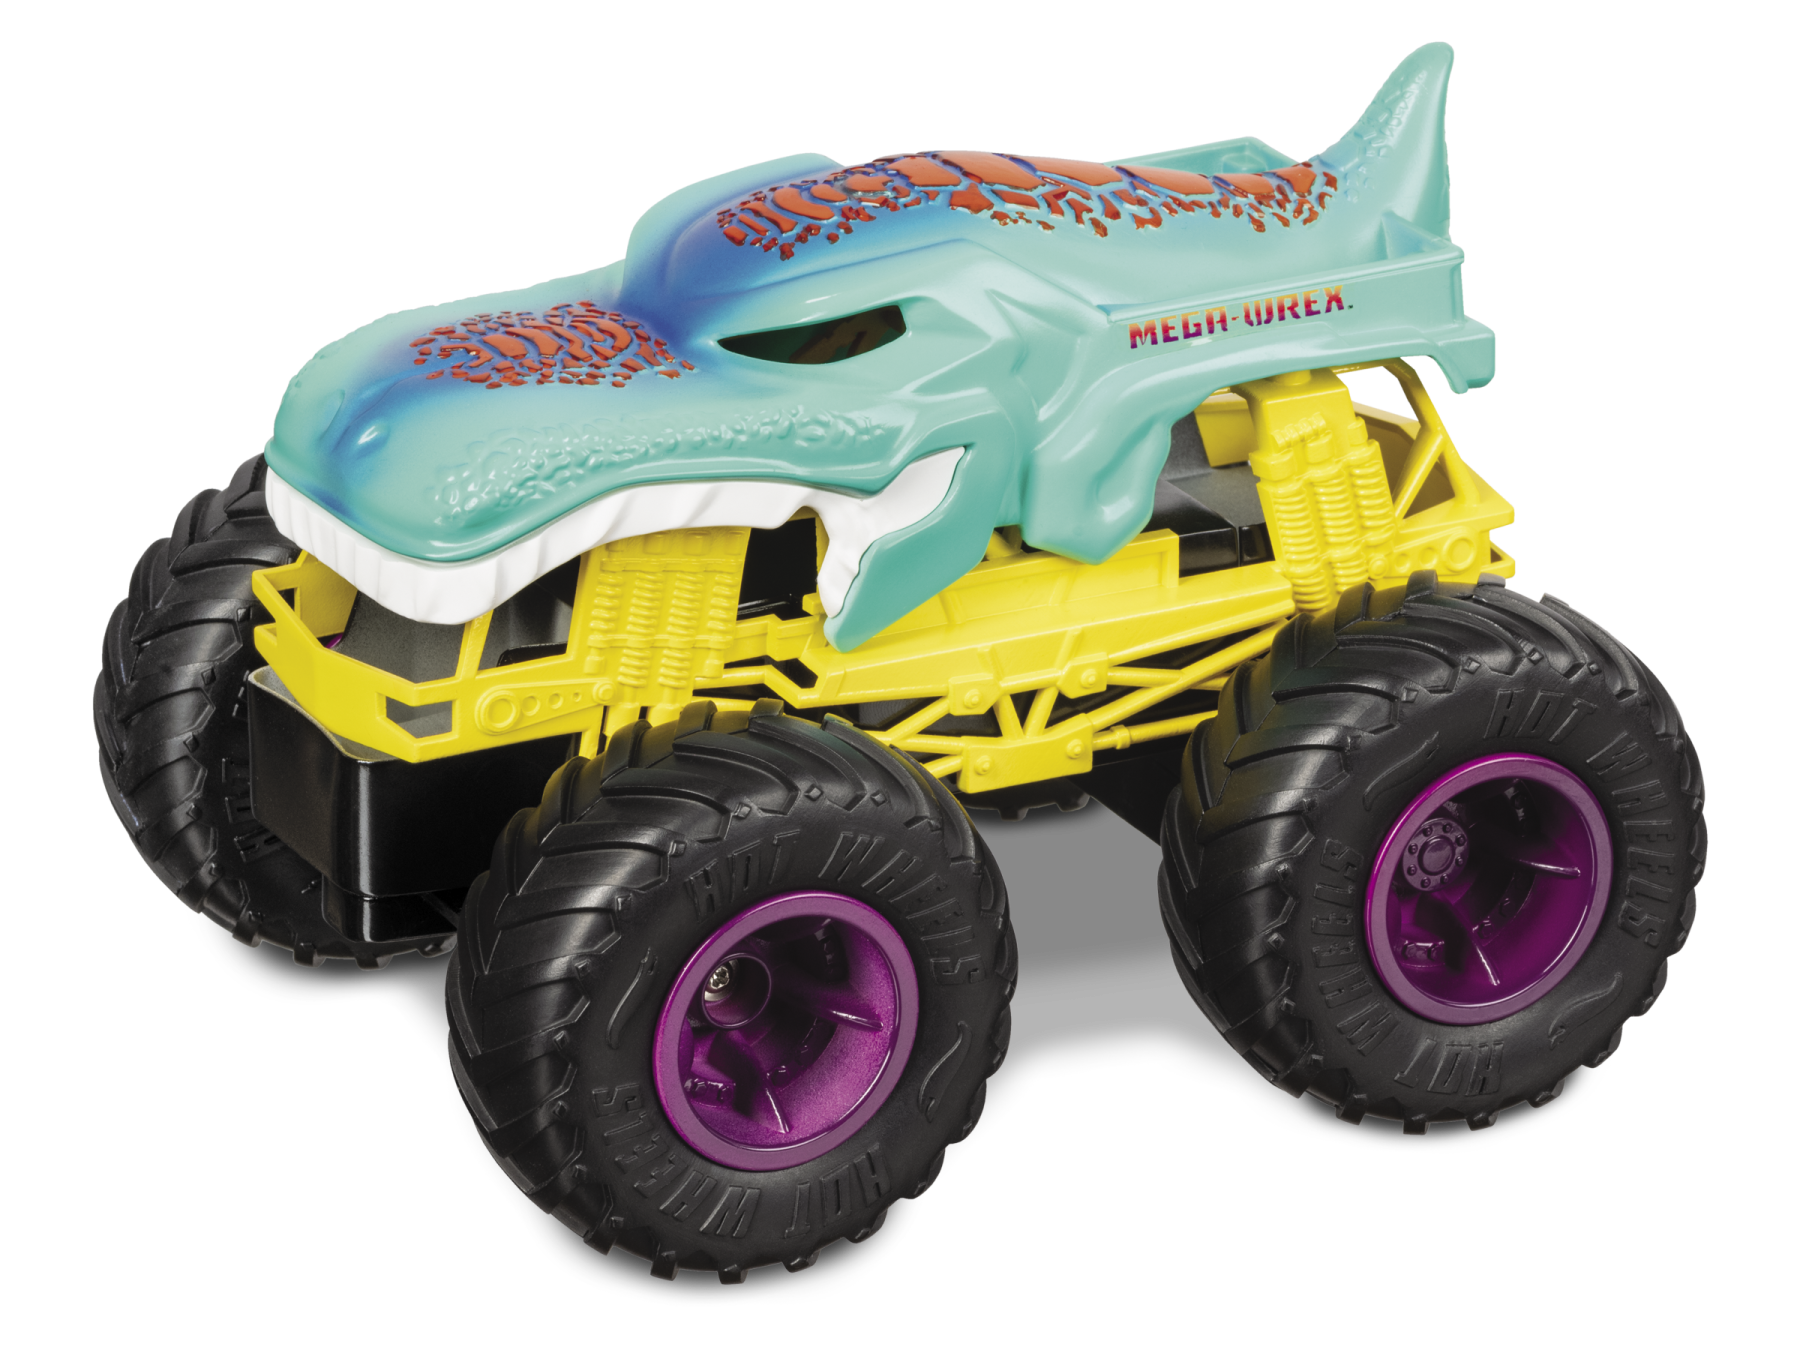 Monster trucks mega wrex-macchina telecomandata per bambini 2.4 ghz - Hot Wheels